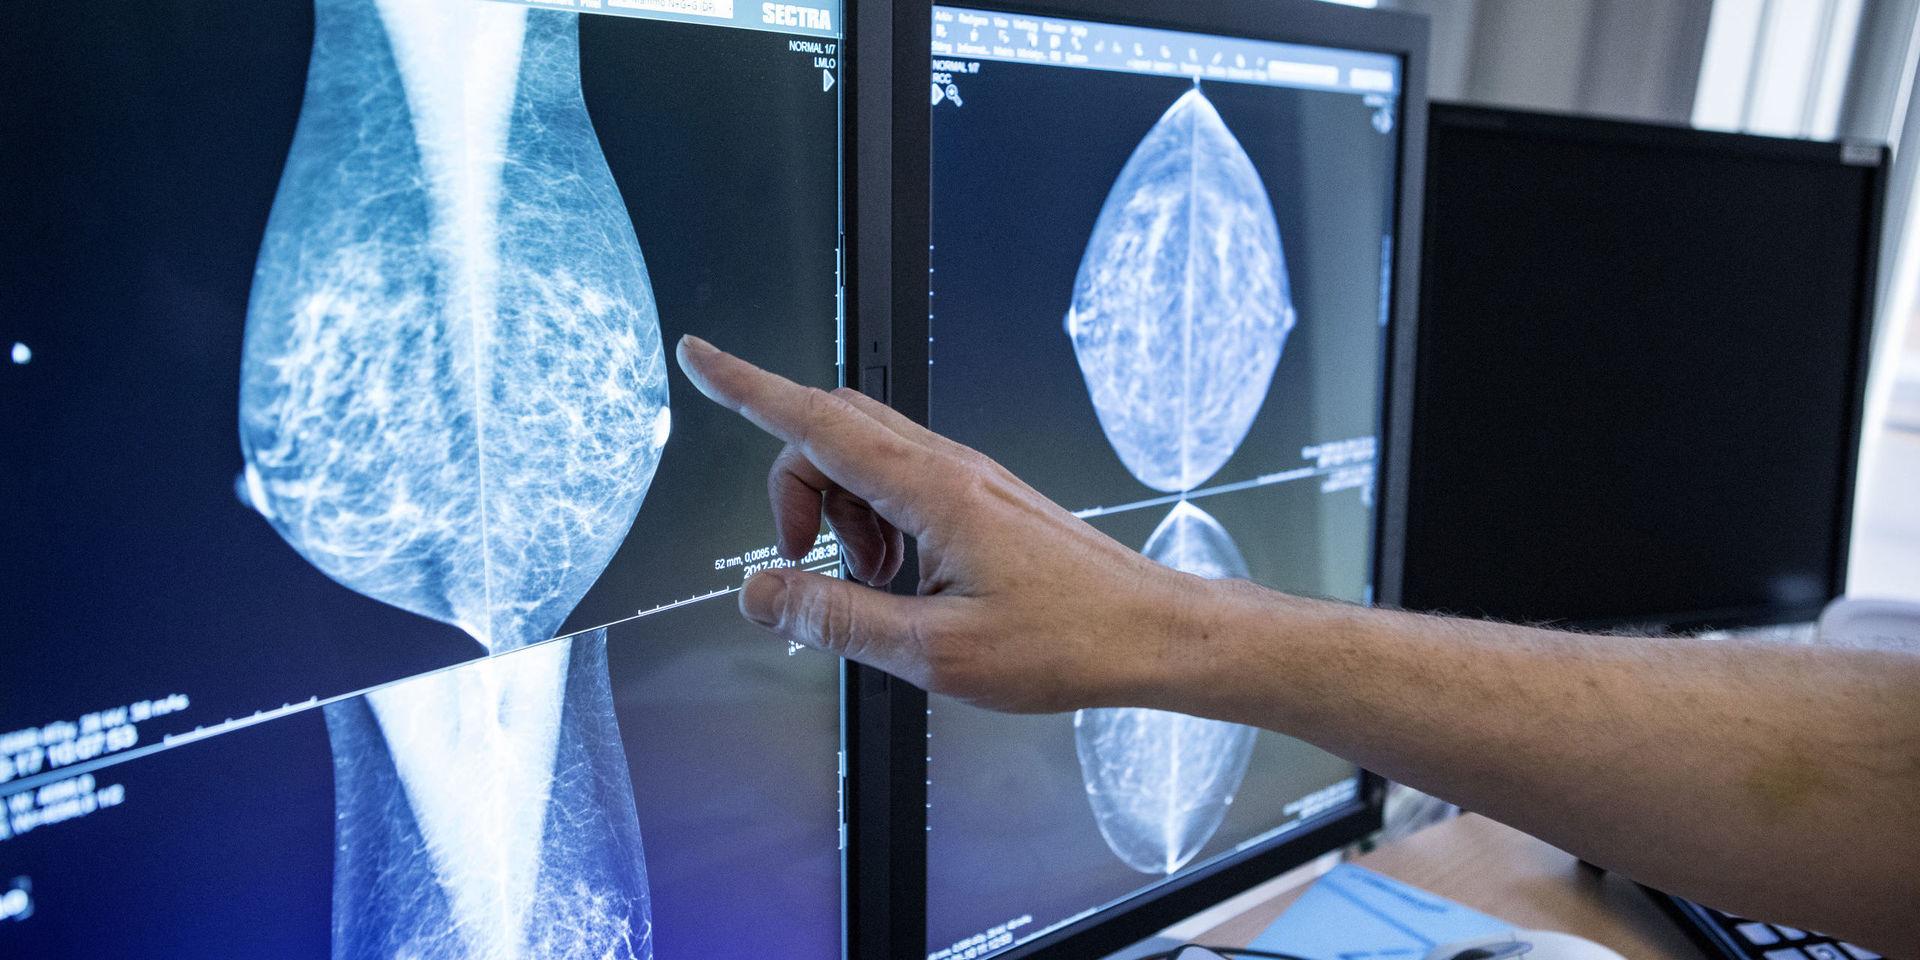  Trots att mammografin blev &quot;gratis&quot; 2016 har detta inte lett till att fler kvinnor gått på undersökningen, skriver debattörerna.